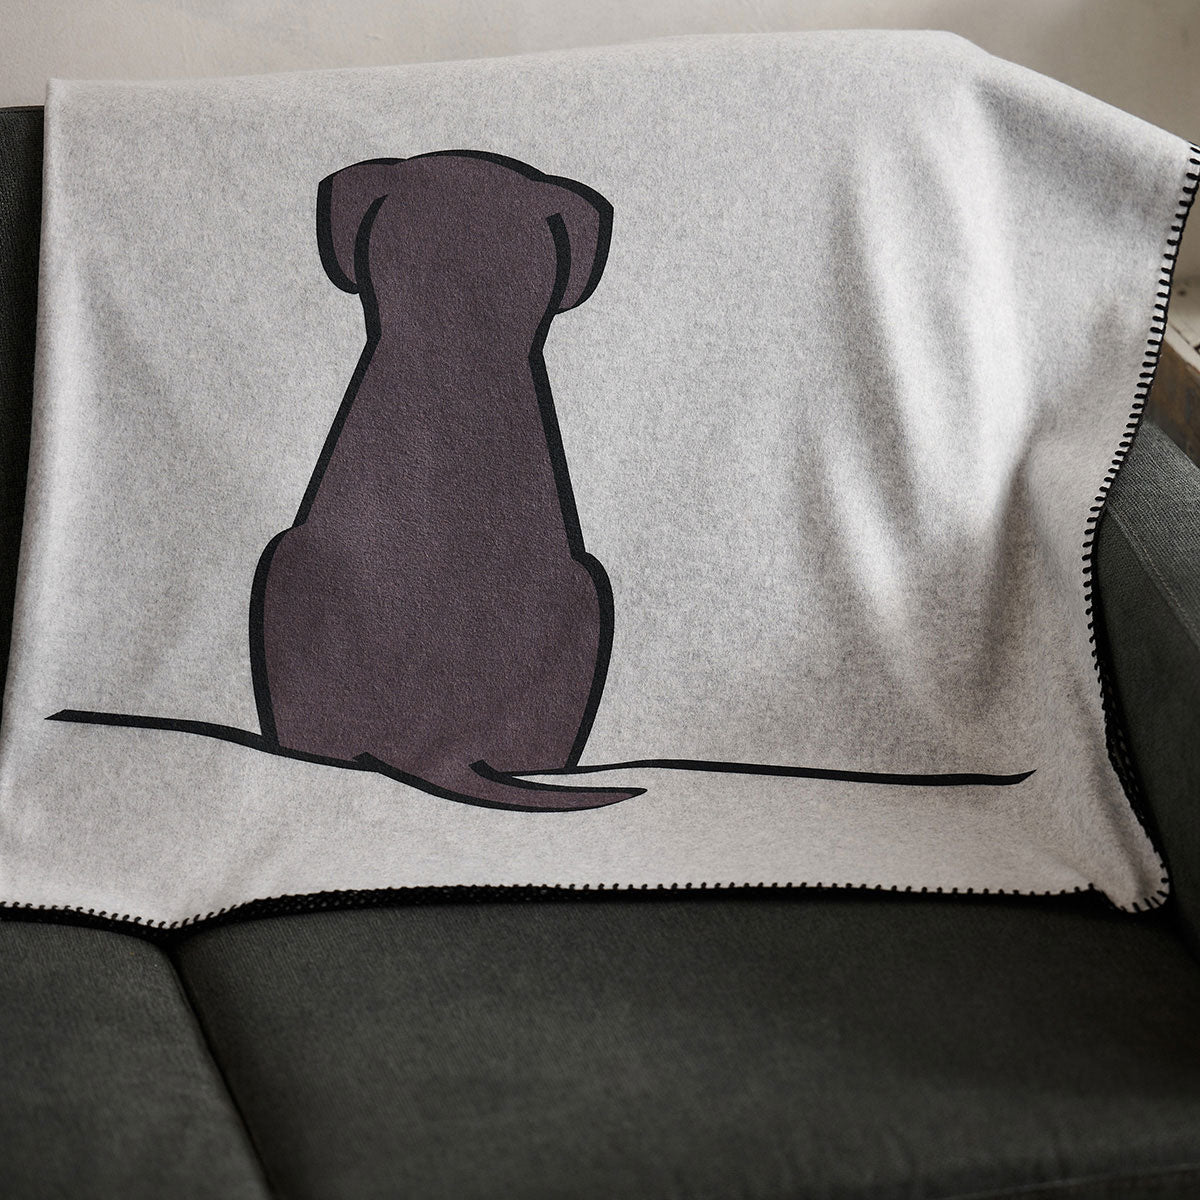 Sitting Dog Fleece Blanket on sofa